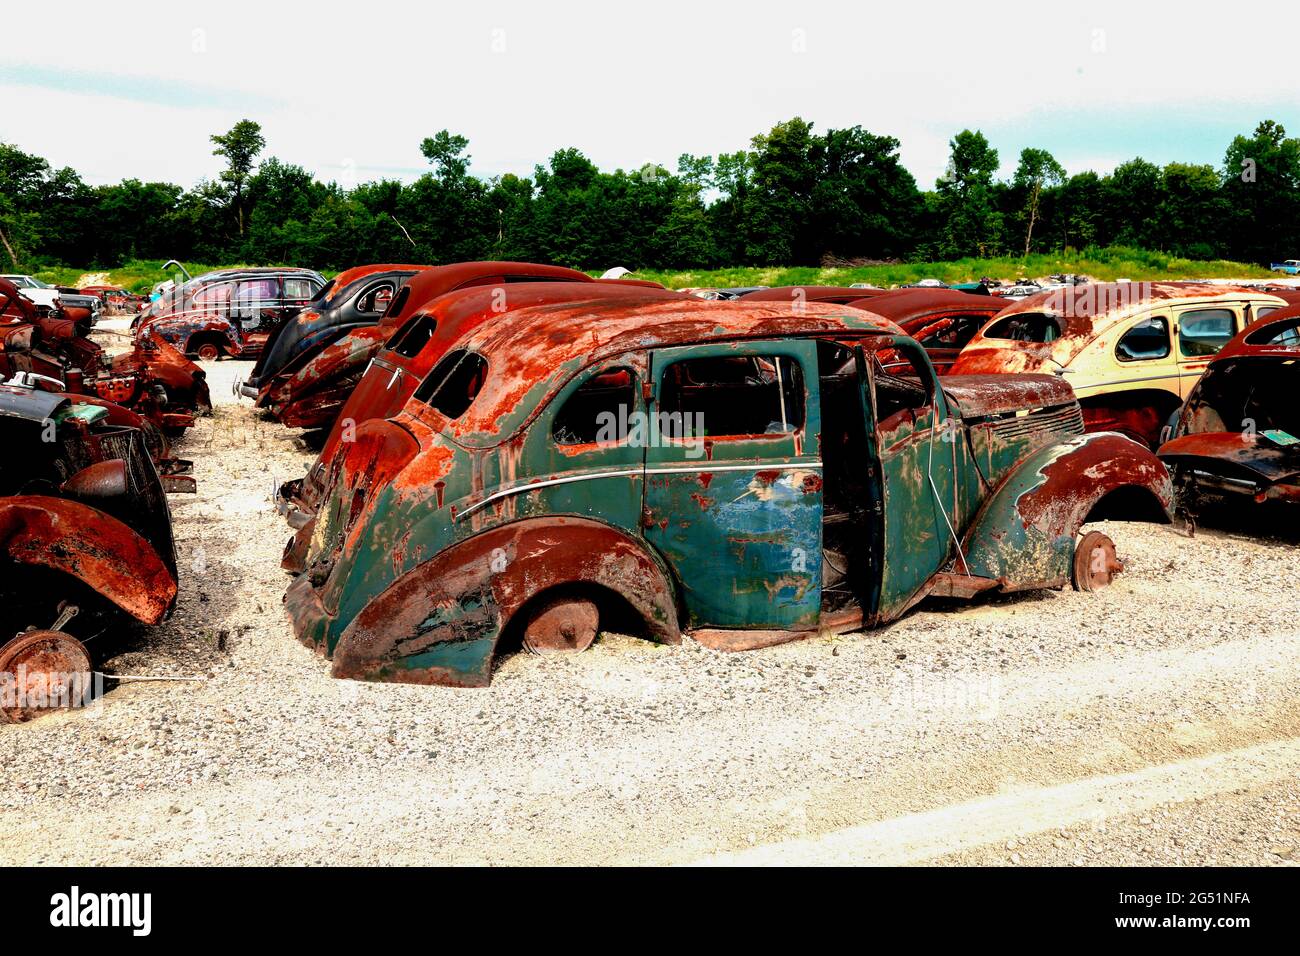 Coches viejos oxidados en el junkyard, Minnesota, Estados Unidos Foto de stock